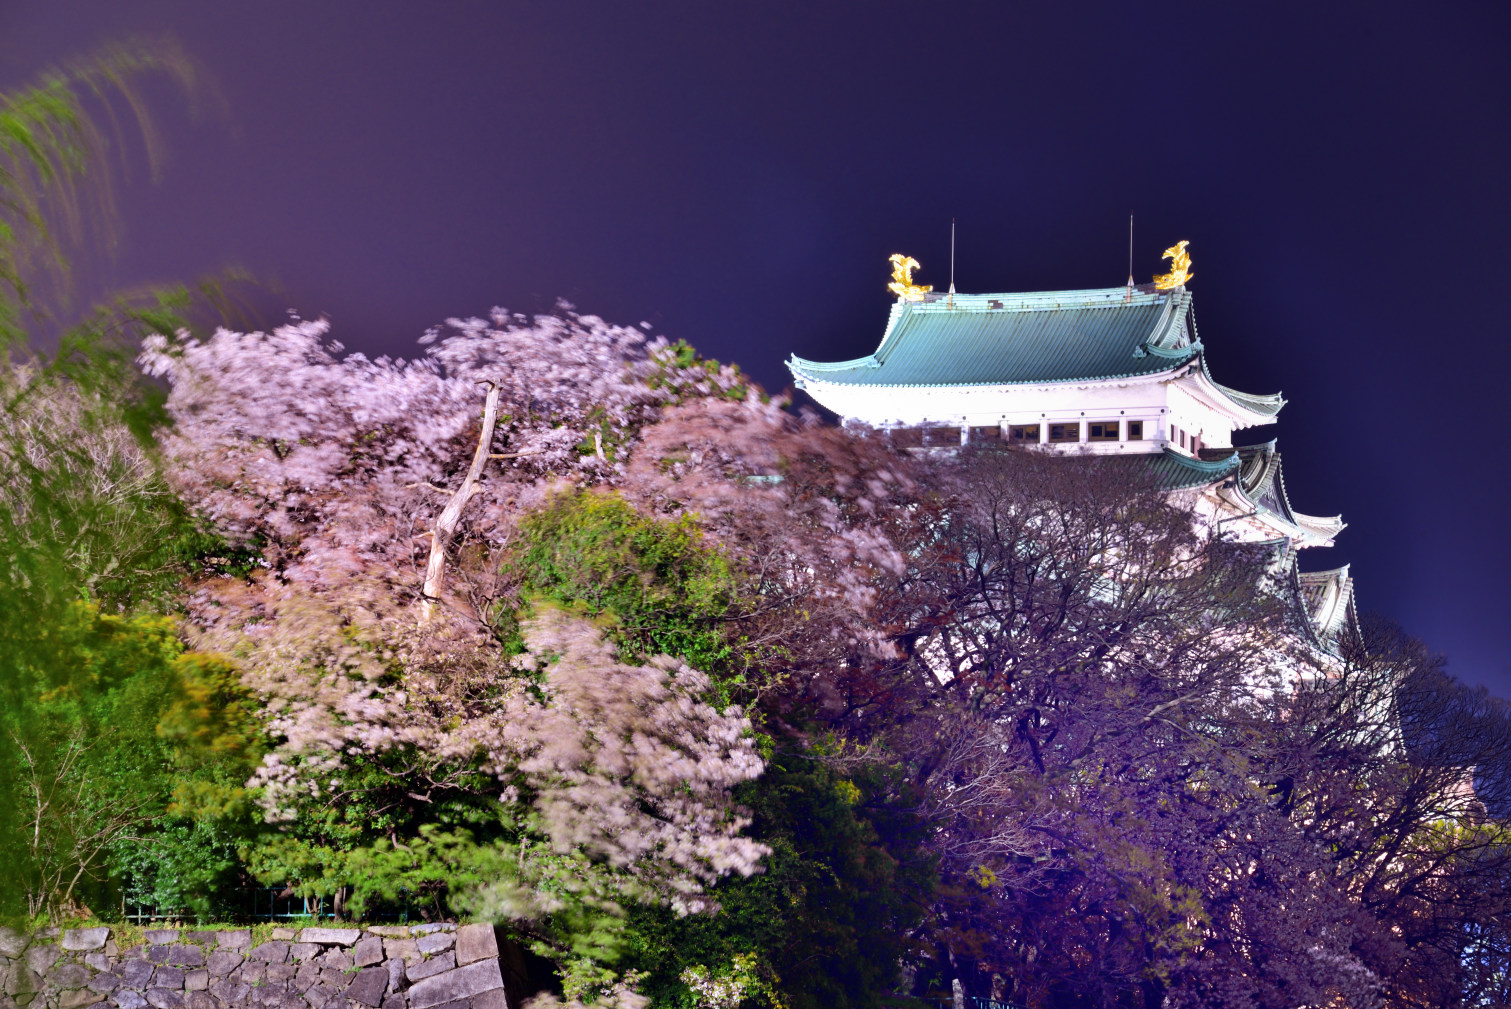 旬景 名古屋城の桜ライトアップはコロナで中止 お城の灯りただけで 夜桜を 名古屋城 桜 ライトアップ中止 写真好きな人と繋がりたい 4 8 T Co Osy7hg8xlz Twitter